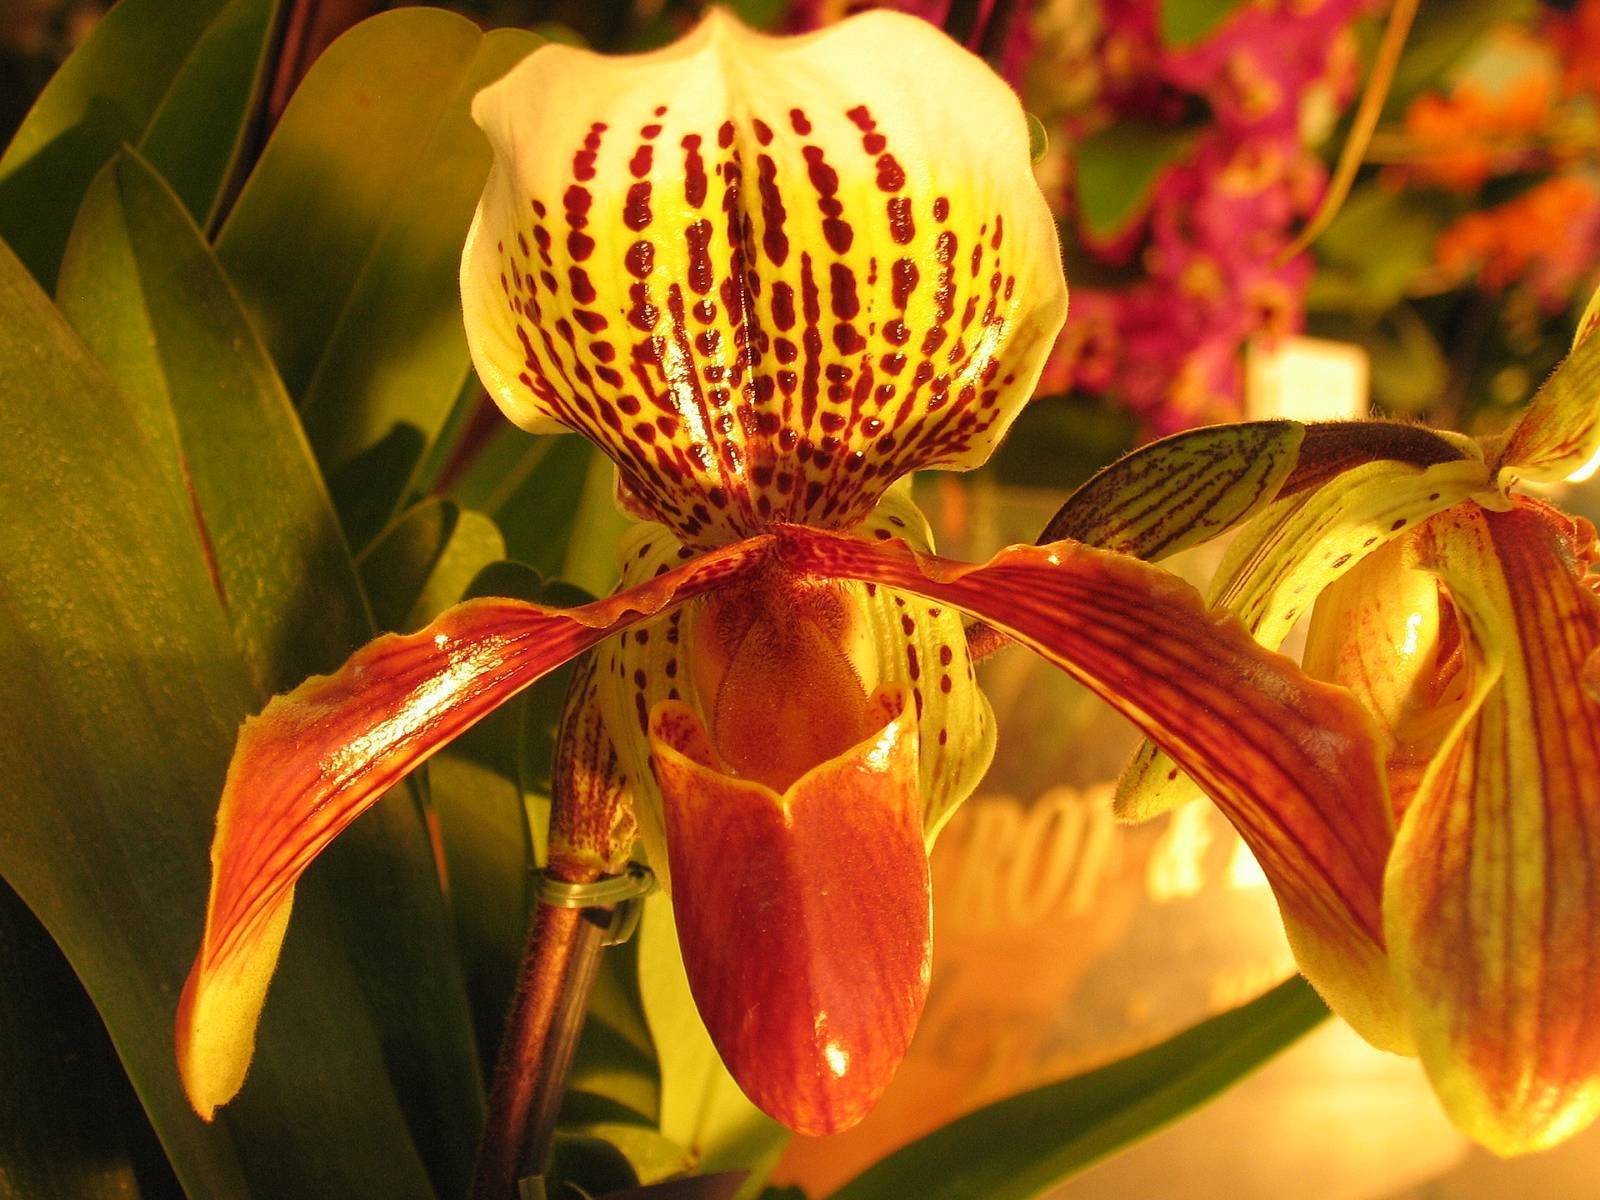 Орхидея венерин башмачок: внешний вид растения, различные сорта с фото, уход в домашних условиях, размножение цветка, возможные болезни и вредители selo.guru — интернет портал о сельском хозяйстве